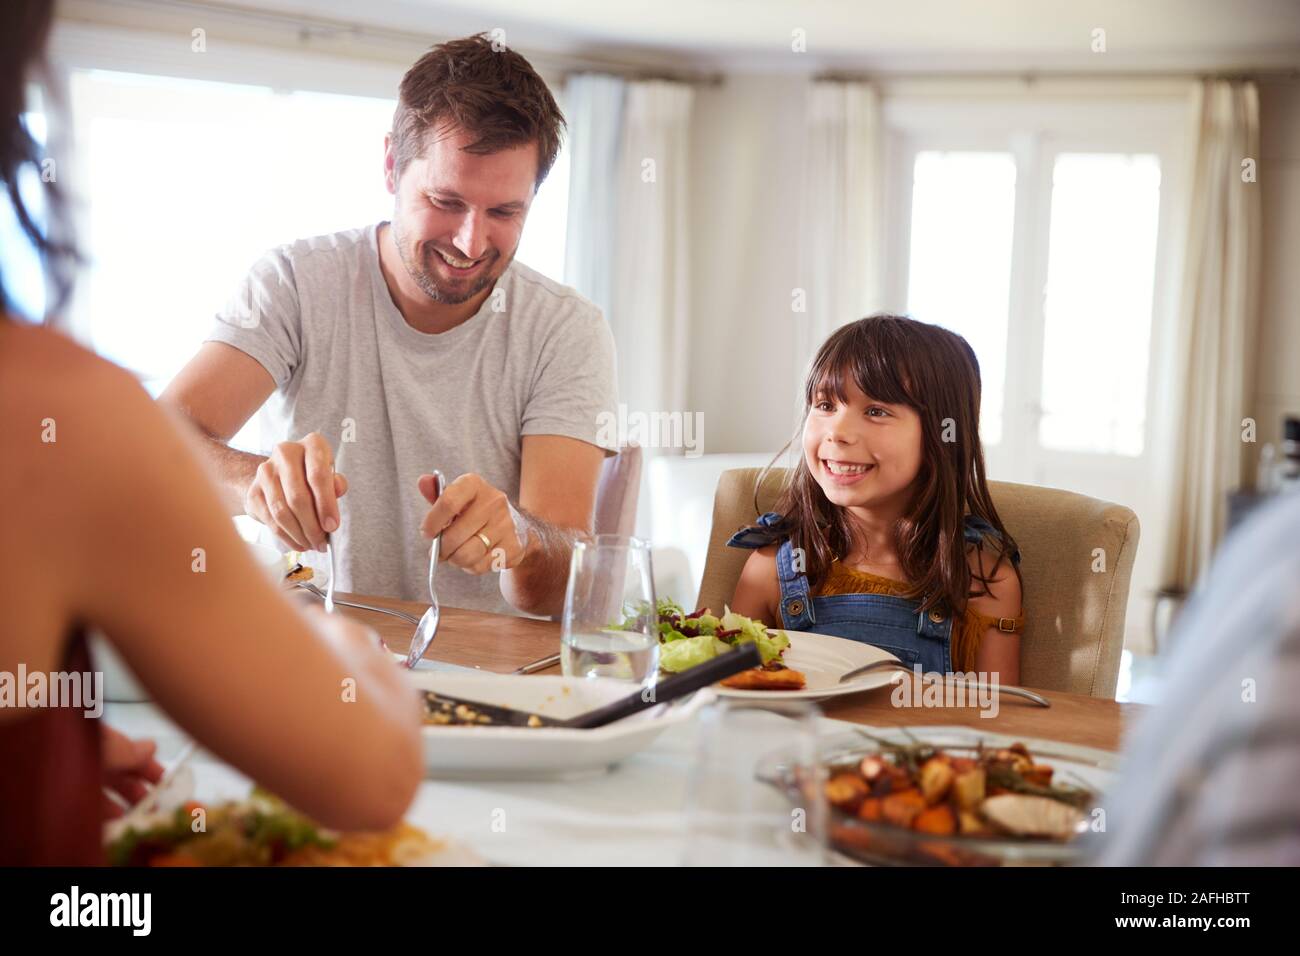 Junge Mädchen warten auf ihr Vati Essen am Tisch während einer Familie essen zu dienen, in der Nähe Stockfoto